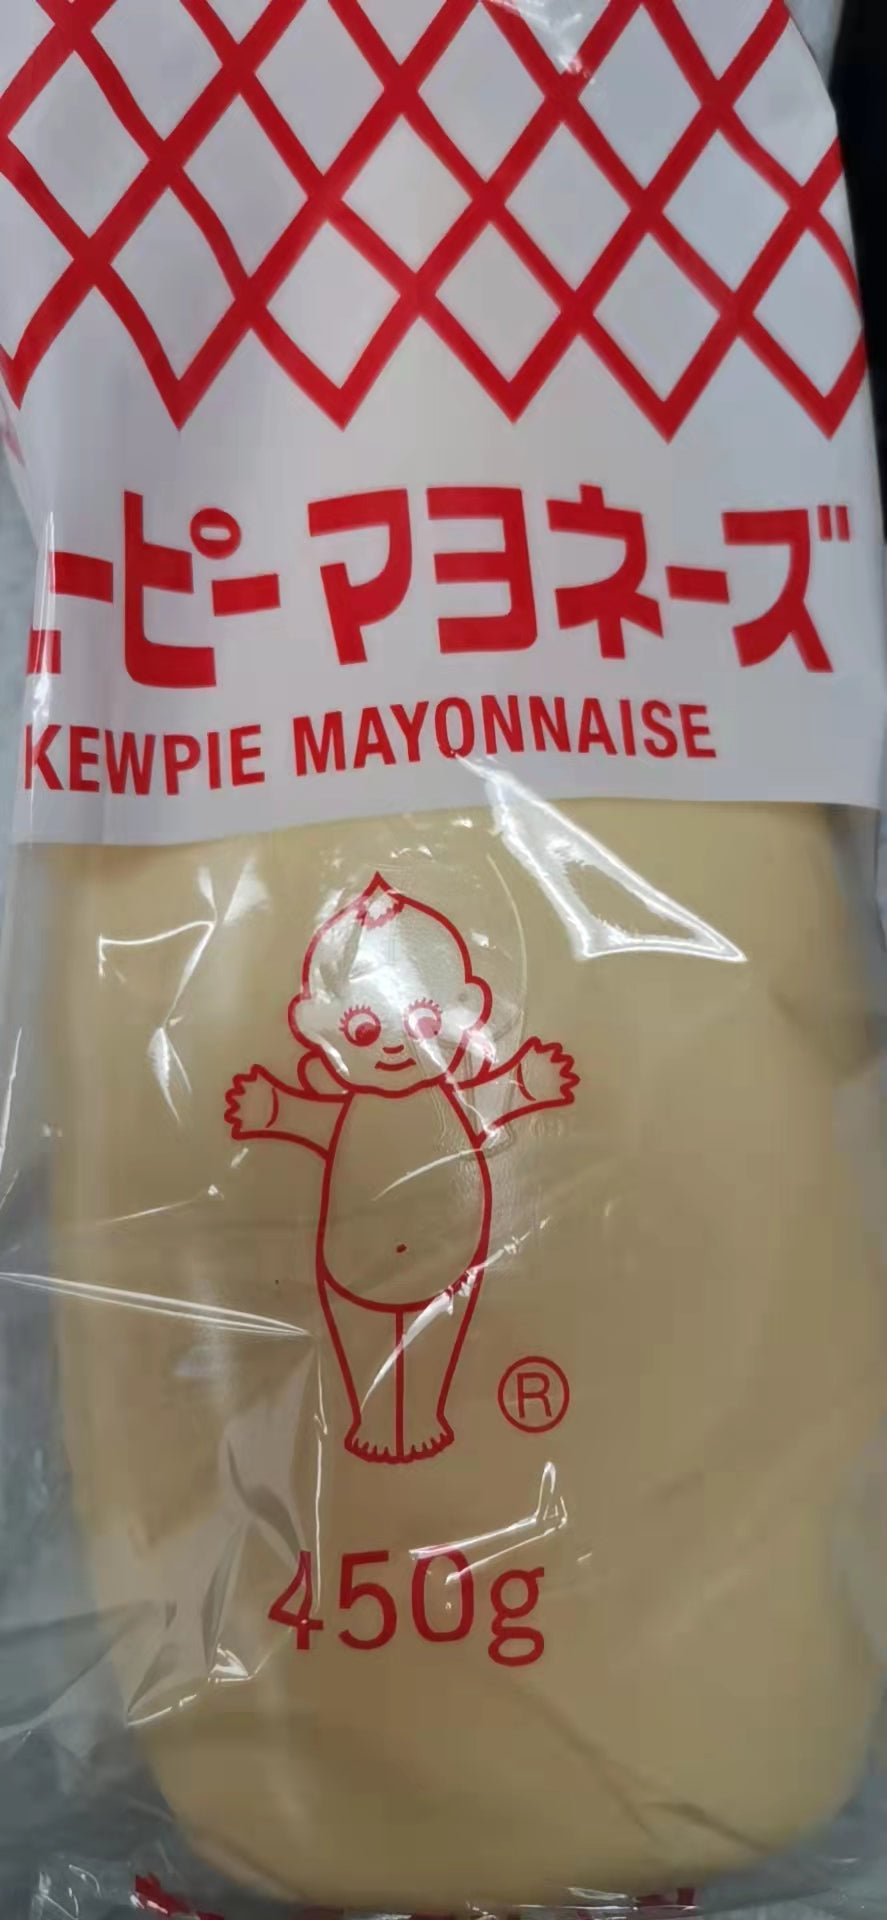 Kewpie Mayonnaise 450g